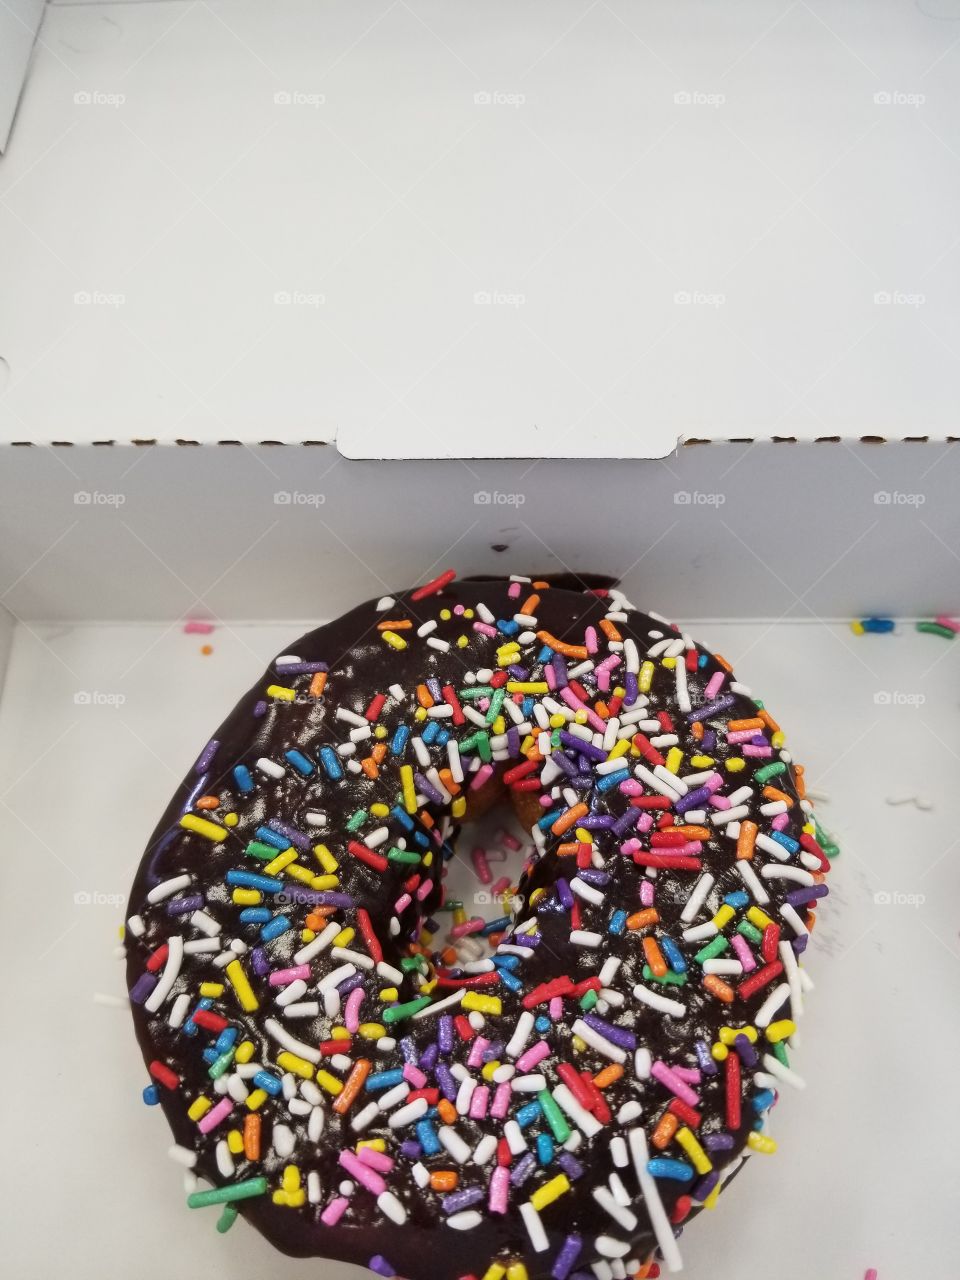 doughnut with rainbow sprinkles